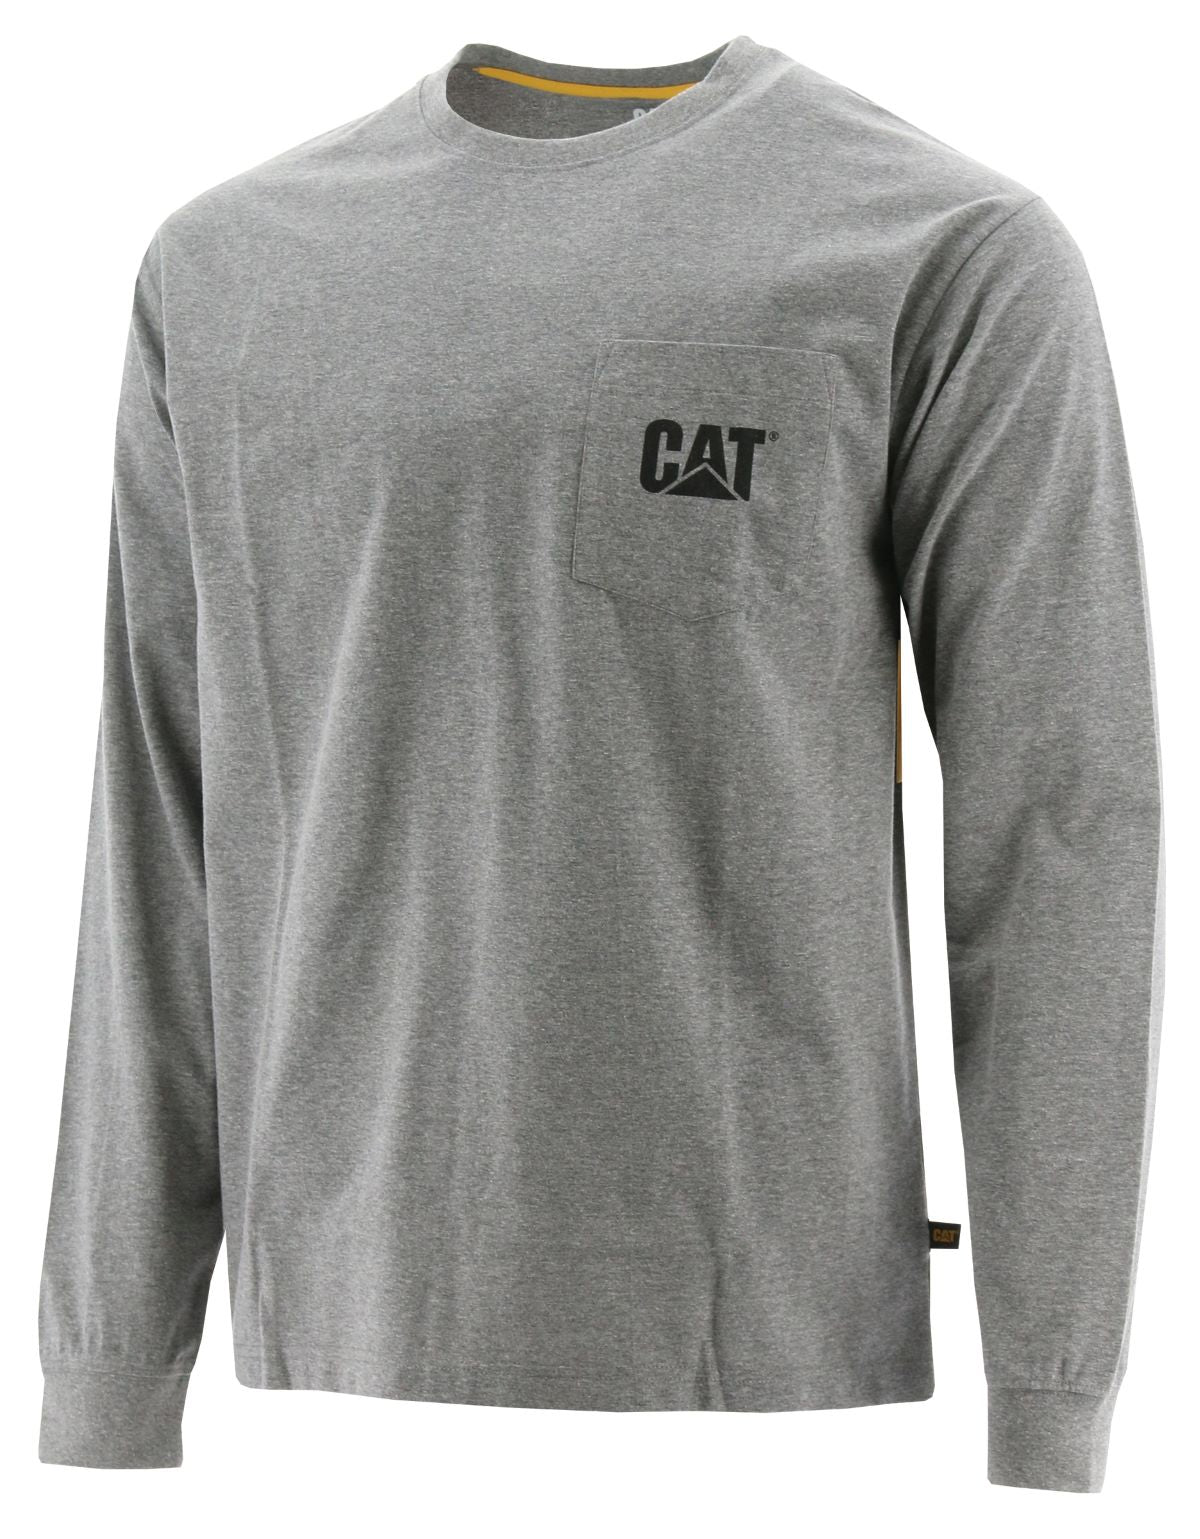 Predator Cues T-Shirt - Grey Cat